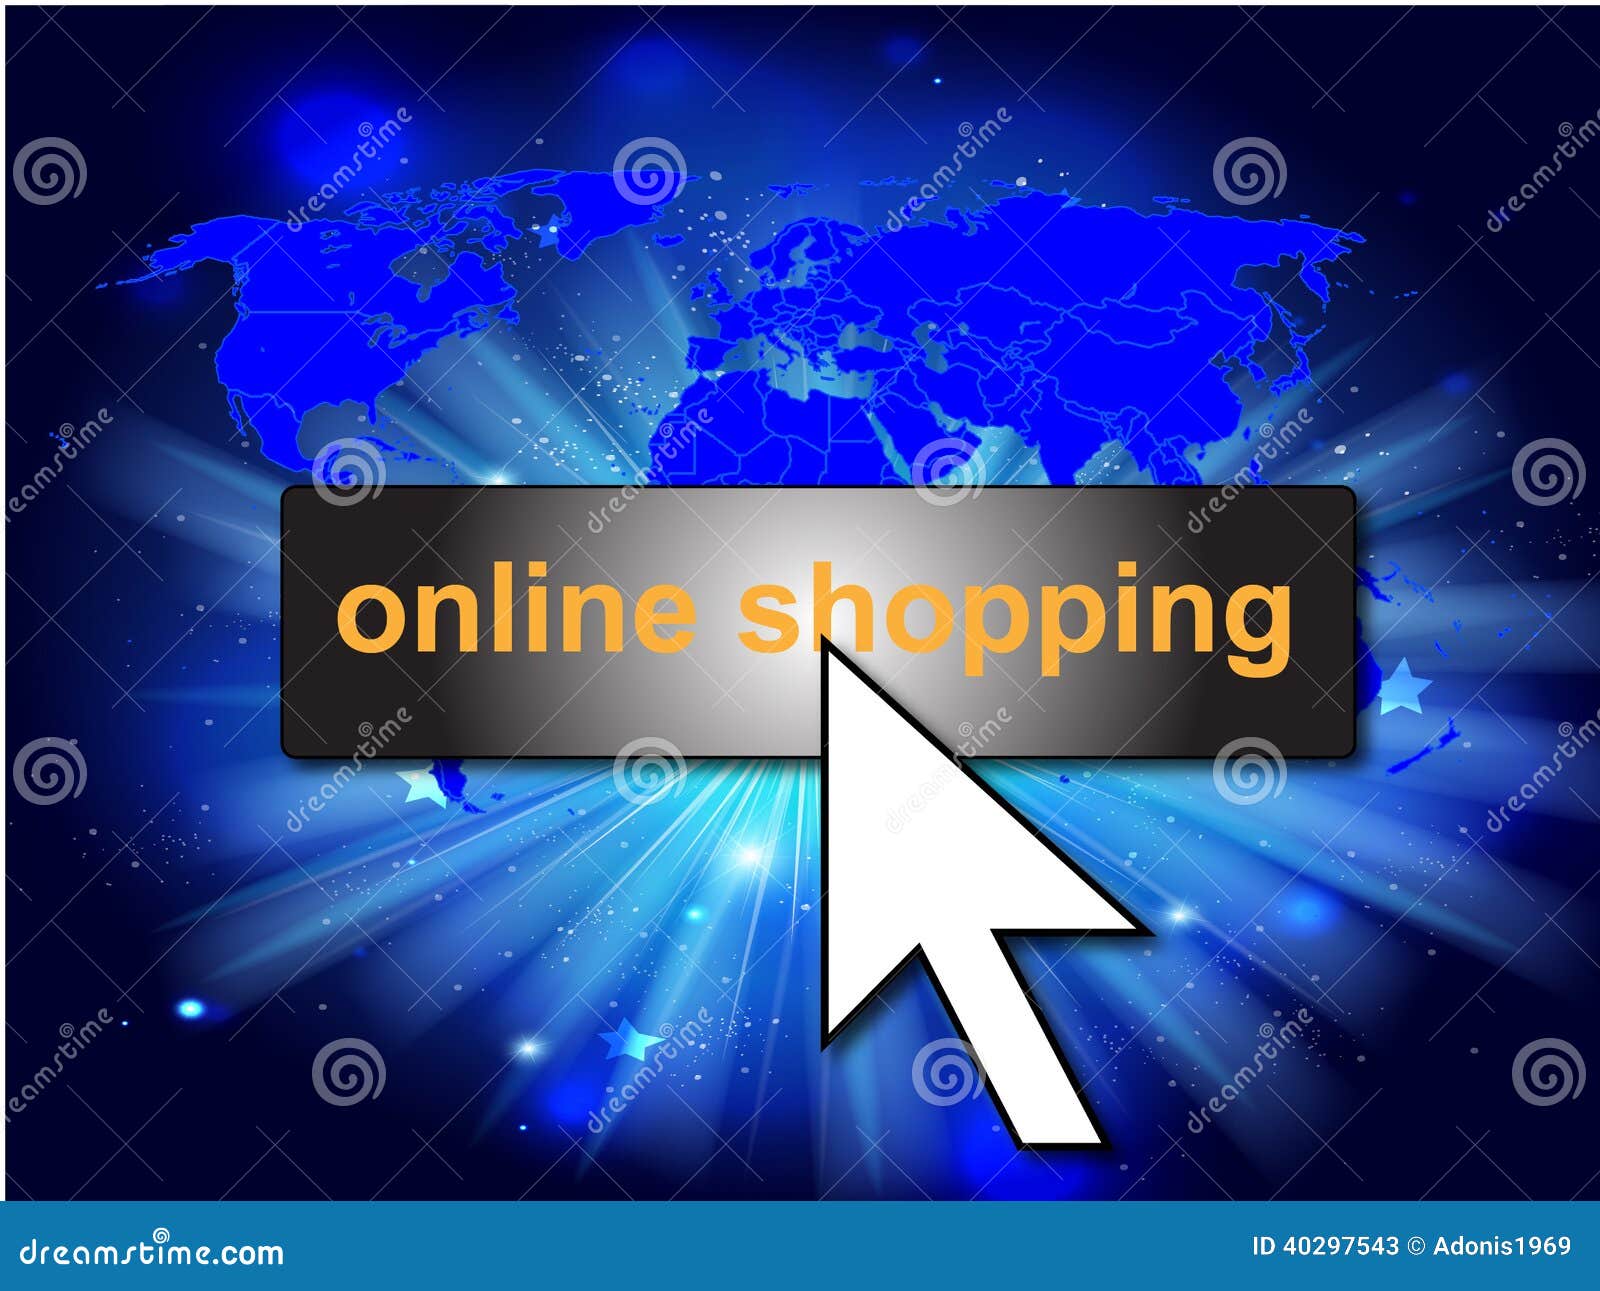 Online Shopping Background Stock Image Image Of Shopping 40297543